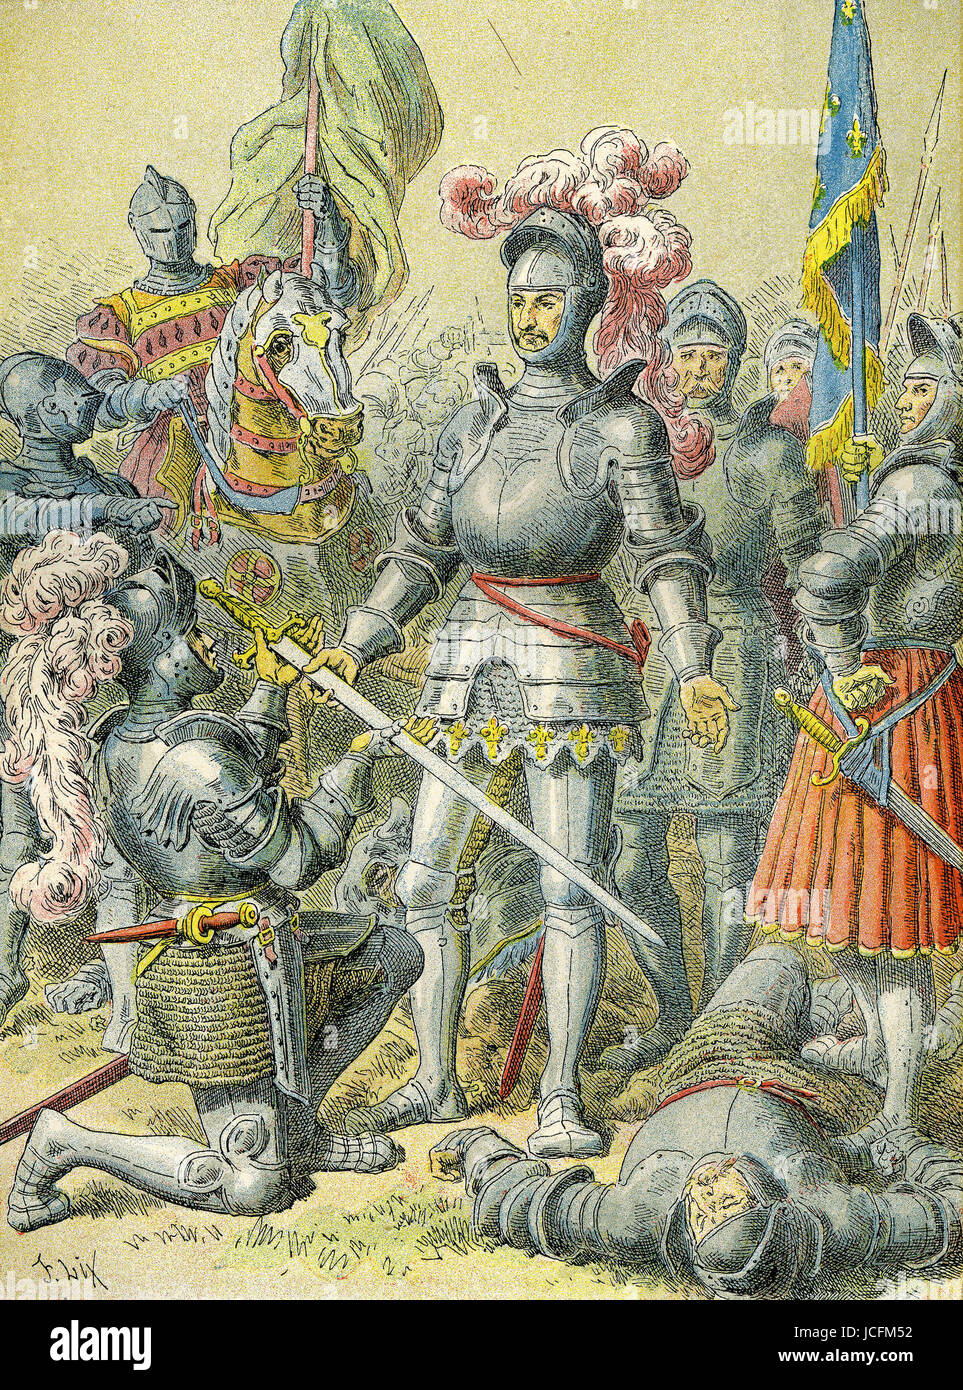 Francis Ist. Schlacht von Pavia. Die Schlacht von Pavia (24. Februar 1525) war ein Descisive Ereignis während der sechsten der italienischen Kriege (1521-1526). Die Schlacht markiert die Niederlage der französischen Könige in ihren Versuch, die Herrschaft über den Norden Italiens zu gewinnen. Stockfoto